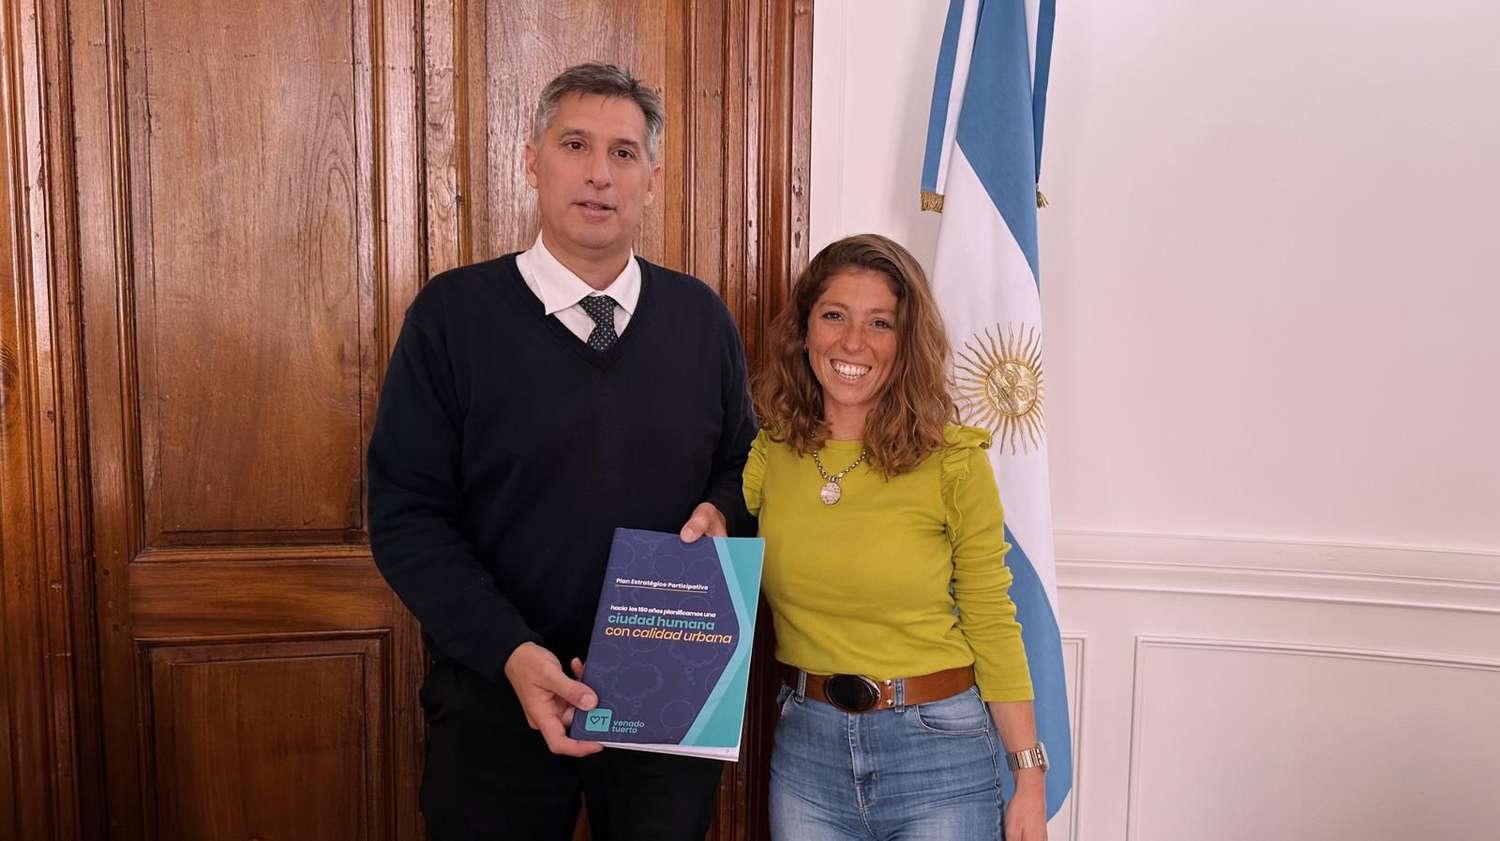 Encuentro de la diputada Galnares con el ministro de Economía Pablo Olivares